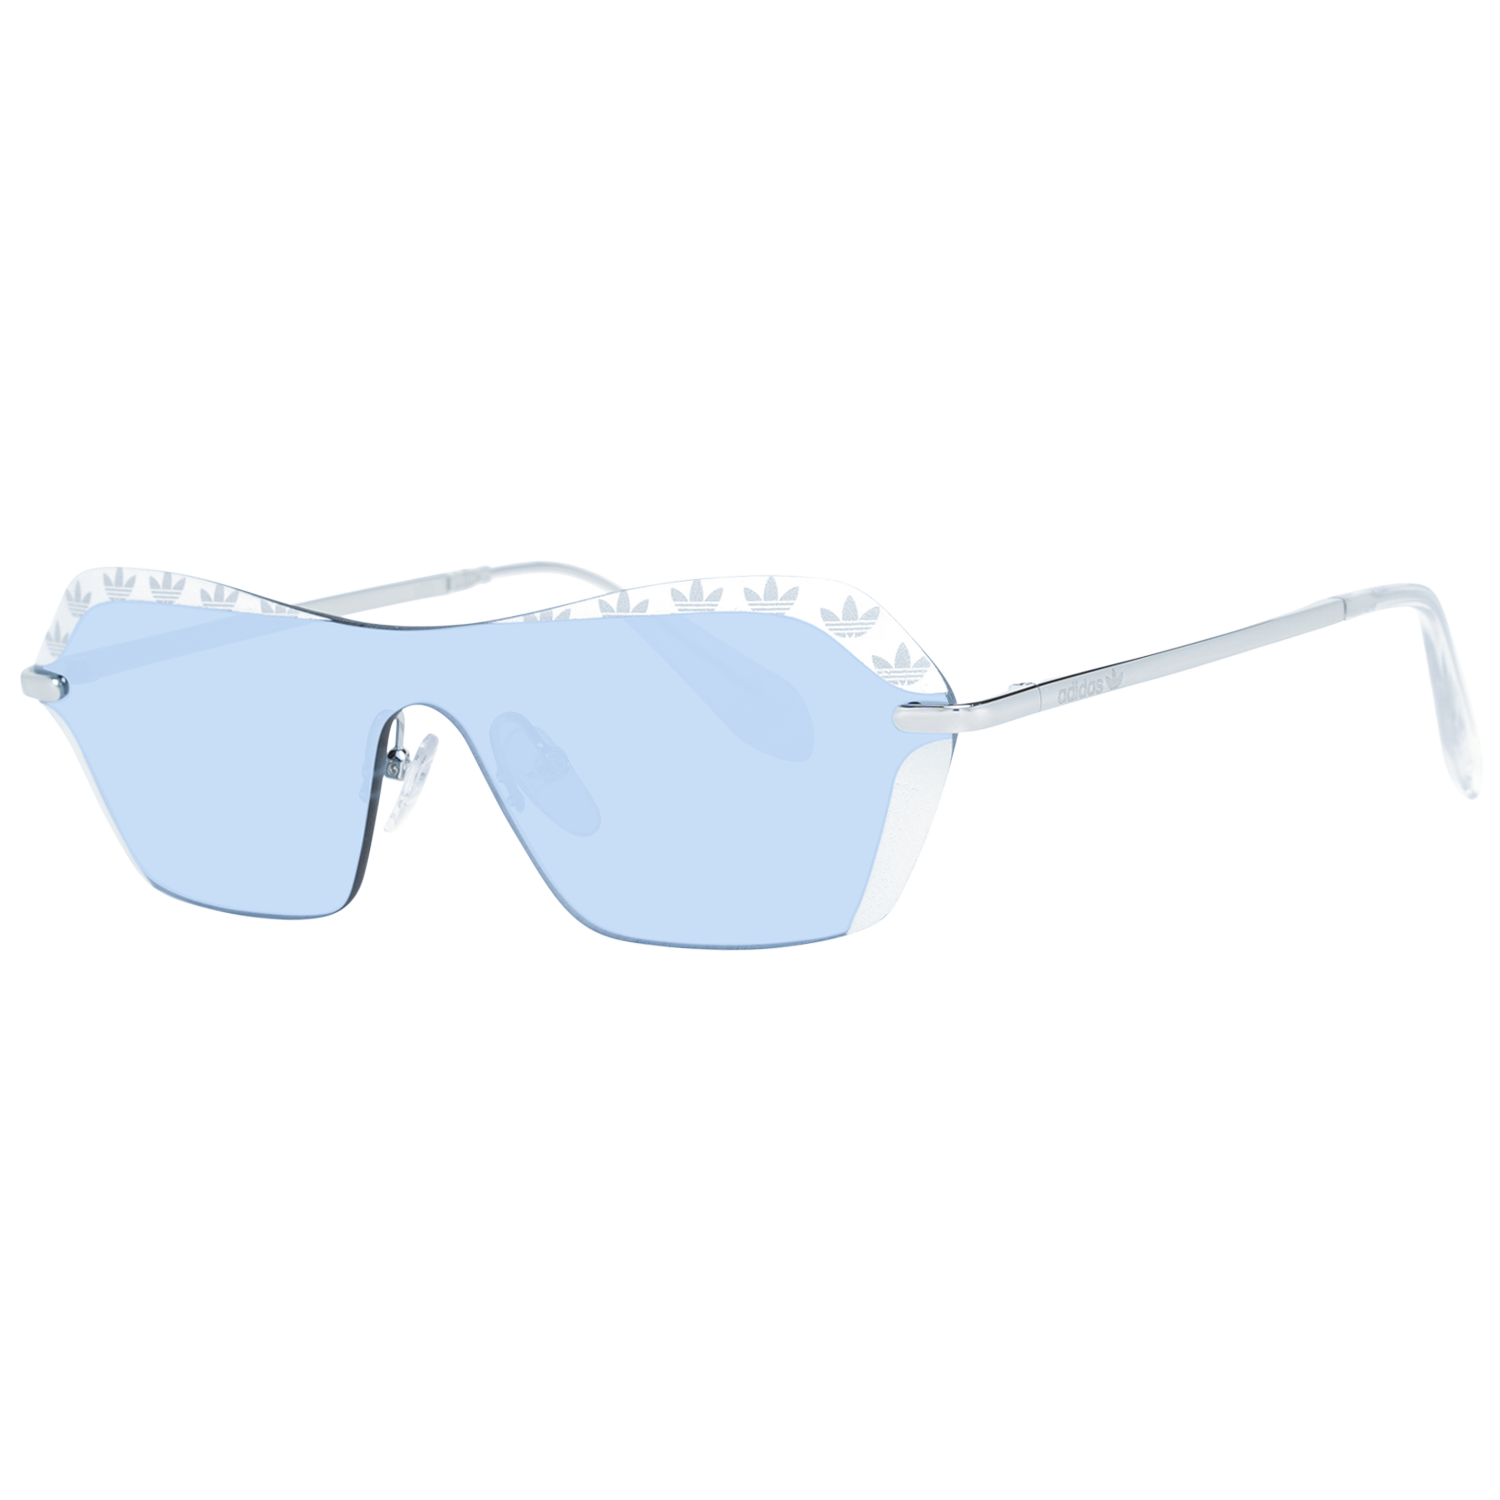 Adidas Sonnenbrille OR0015 24C 00 Damen Weiß